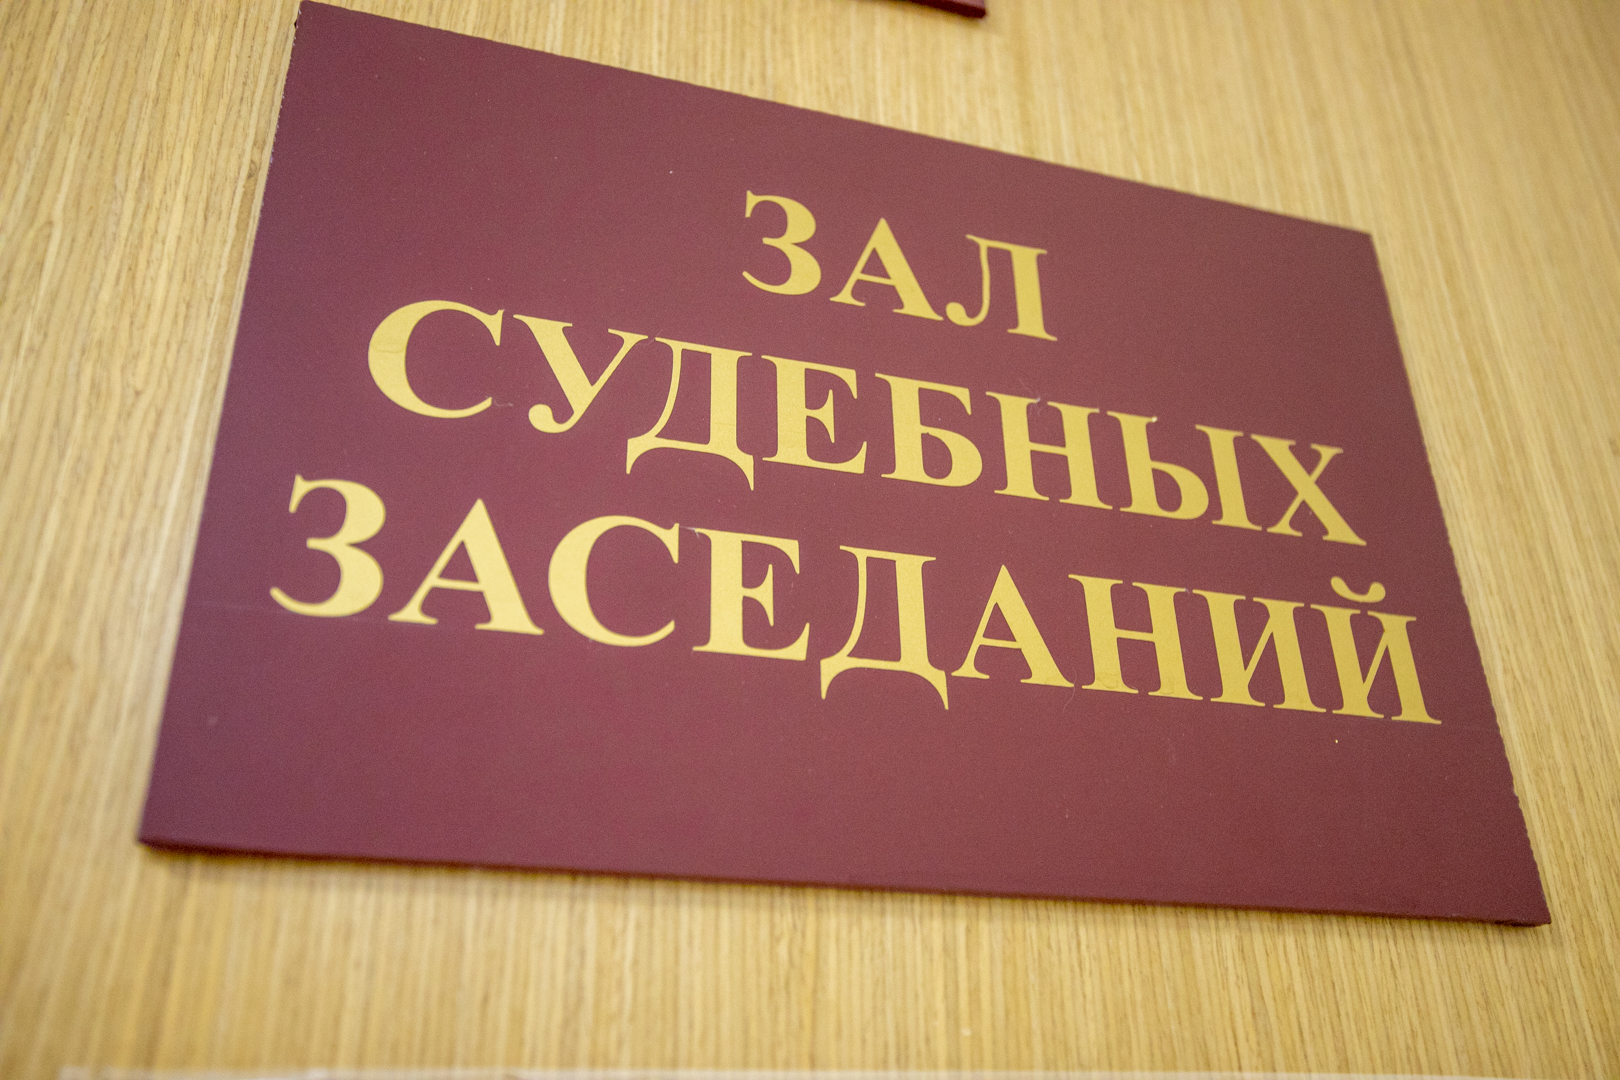 Туляк отсудил у клиники более 220 тысяч рублей за некачественную сентопластику